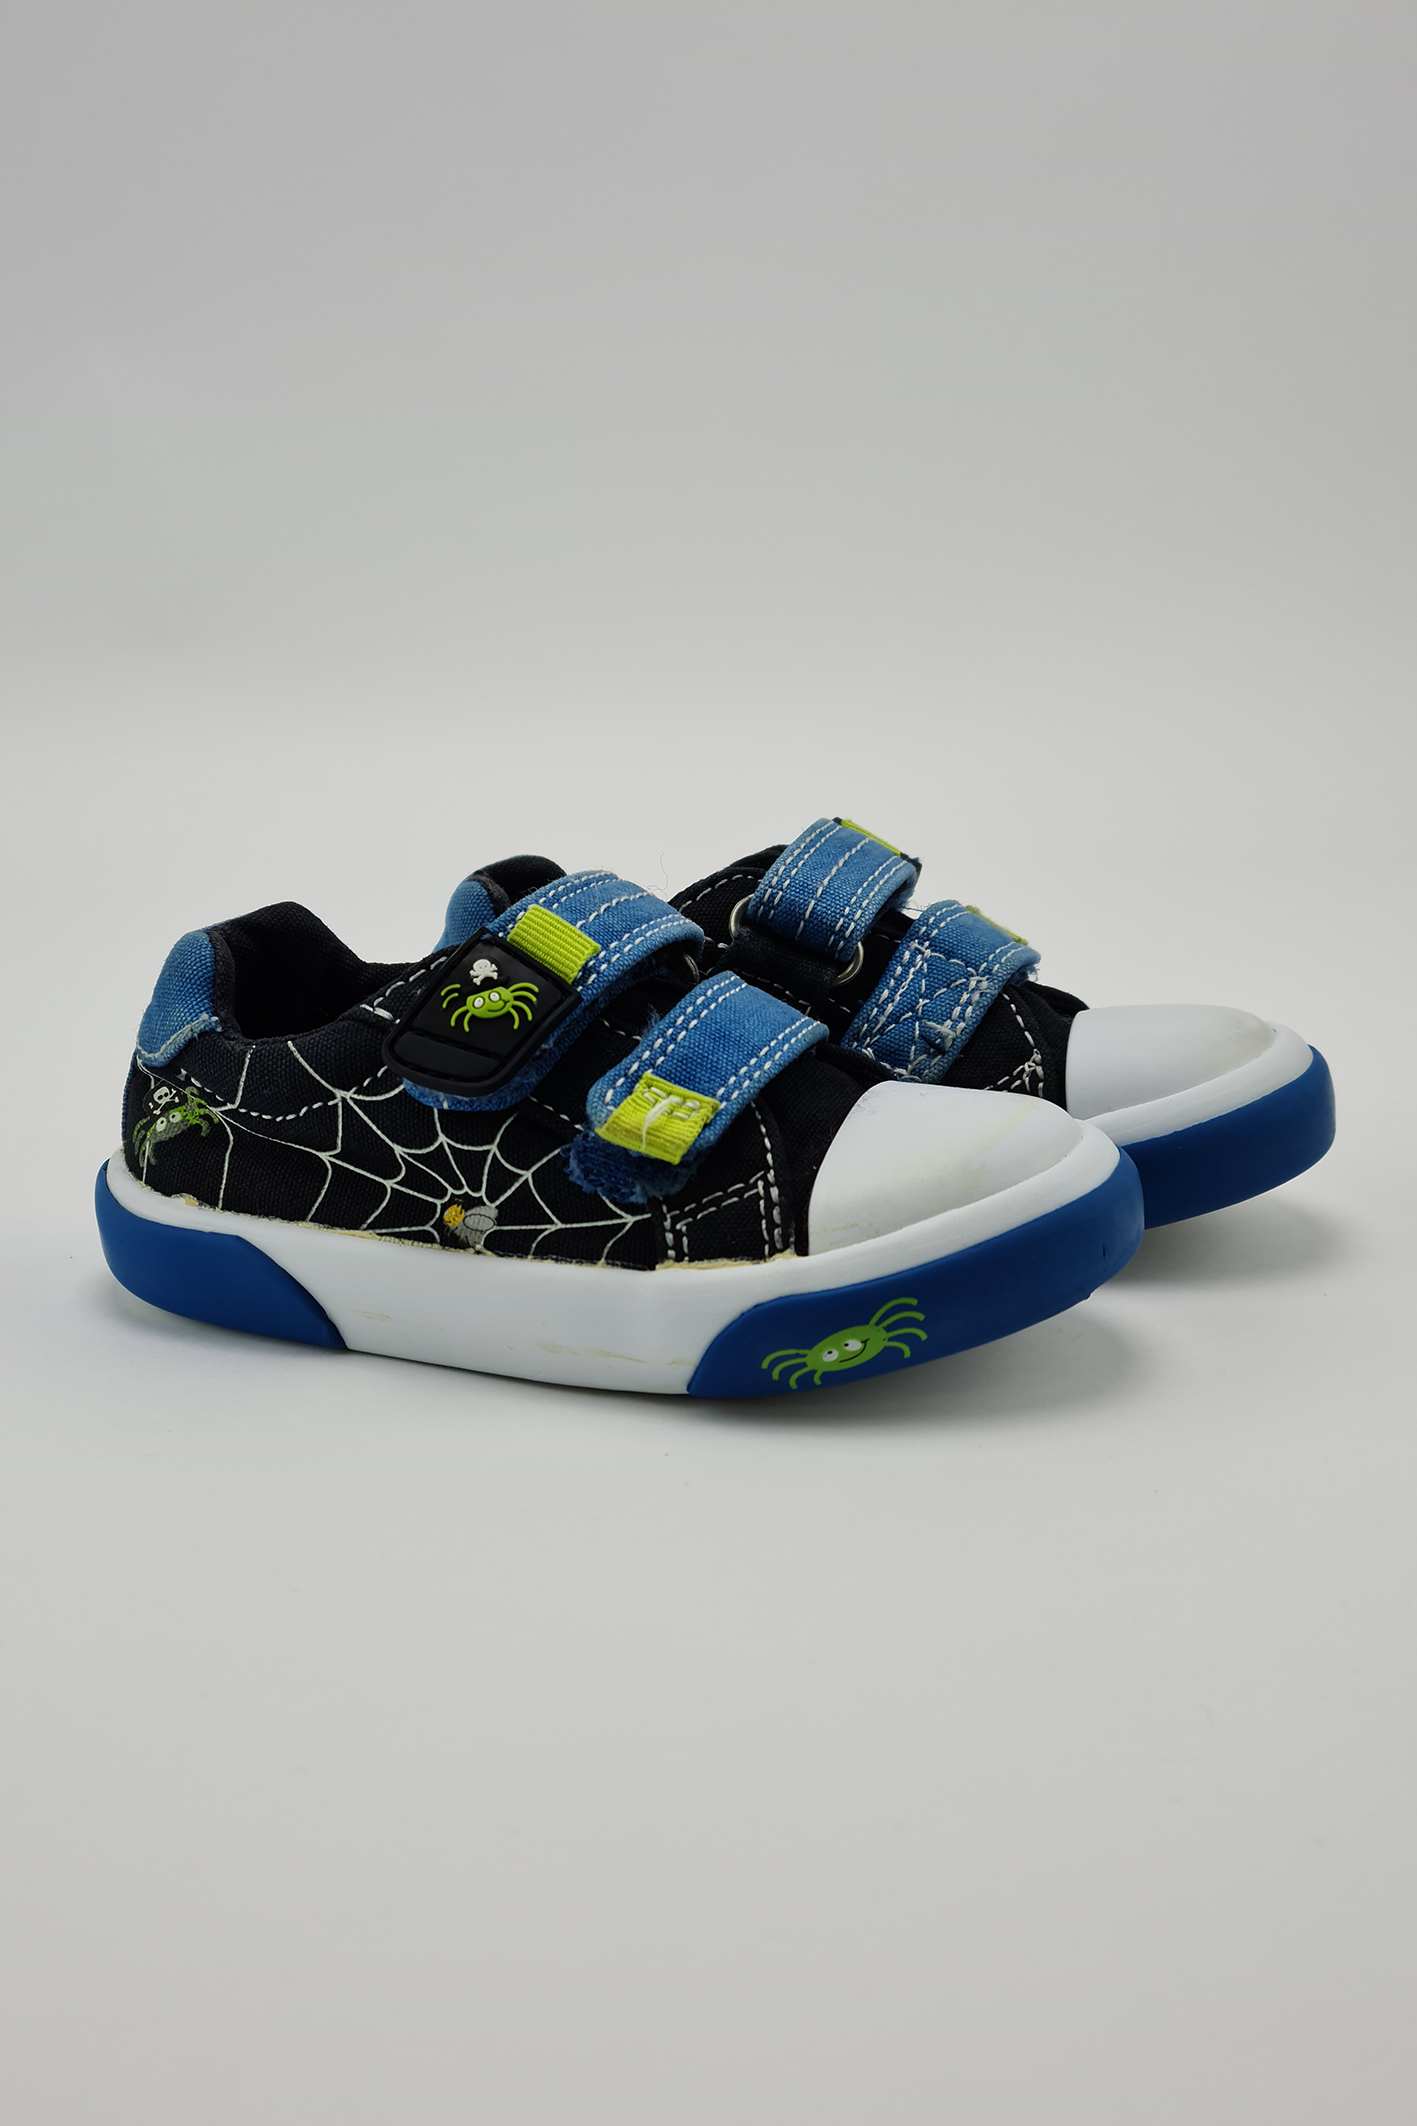 Taille 4 - Chaussures en toile Spider bleu marine